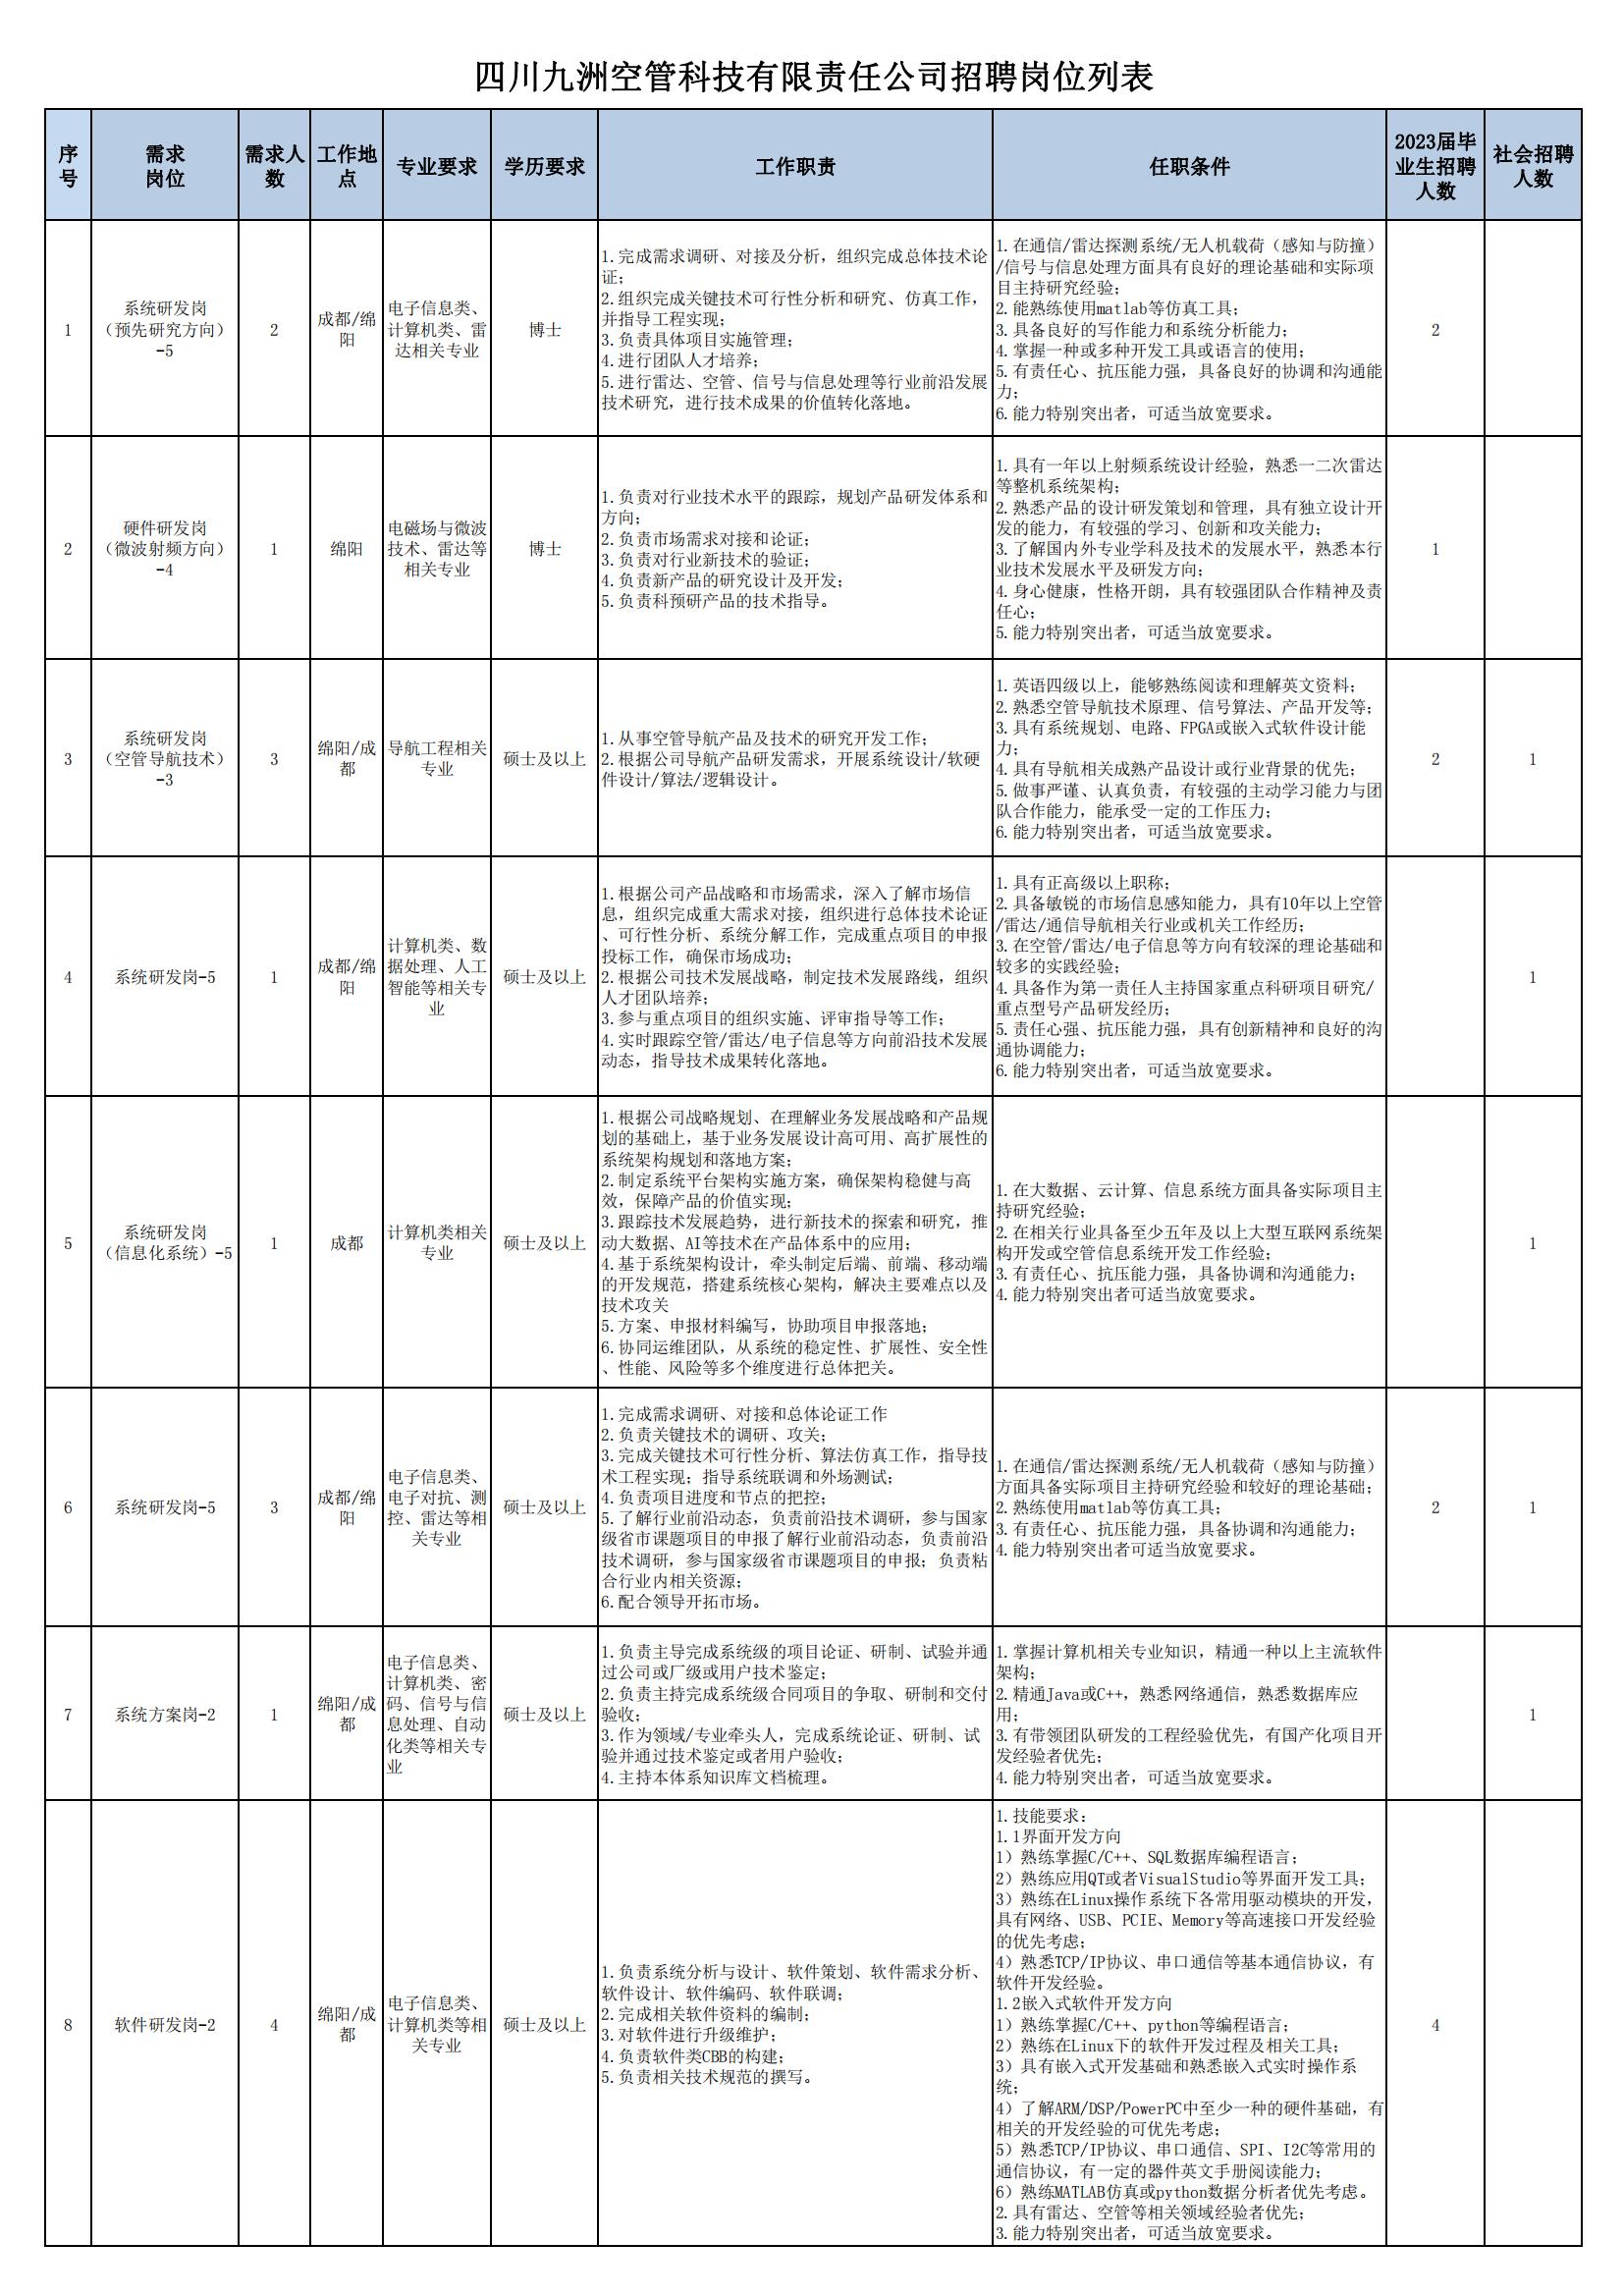 01 四川九洲空管科技有限责任公司招聘岗位列表 - 招聘公告（07月更新）_00.jpg